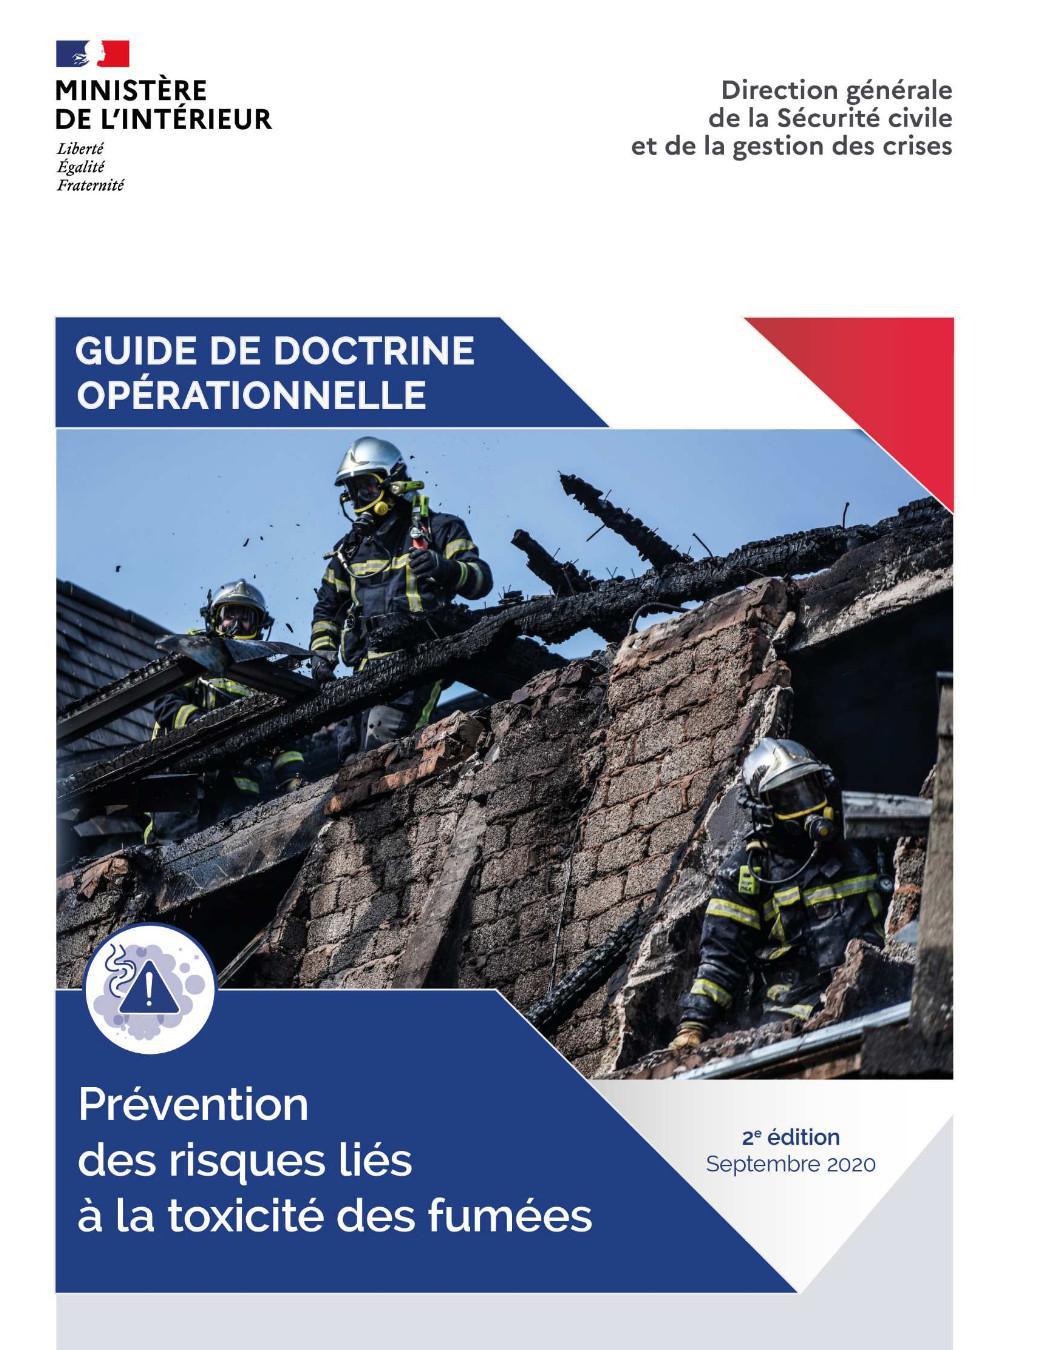 2ème édition du guide de doctrine opérationnelle : Prévention des risques liés à la toxicité des fumées - septembre 2020